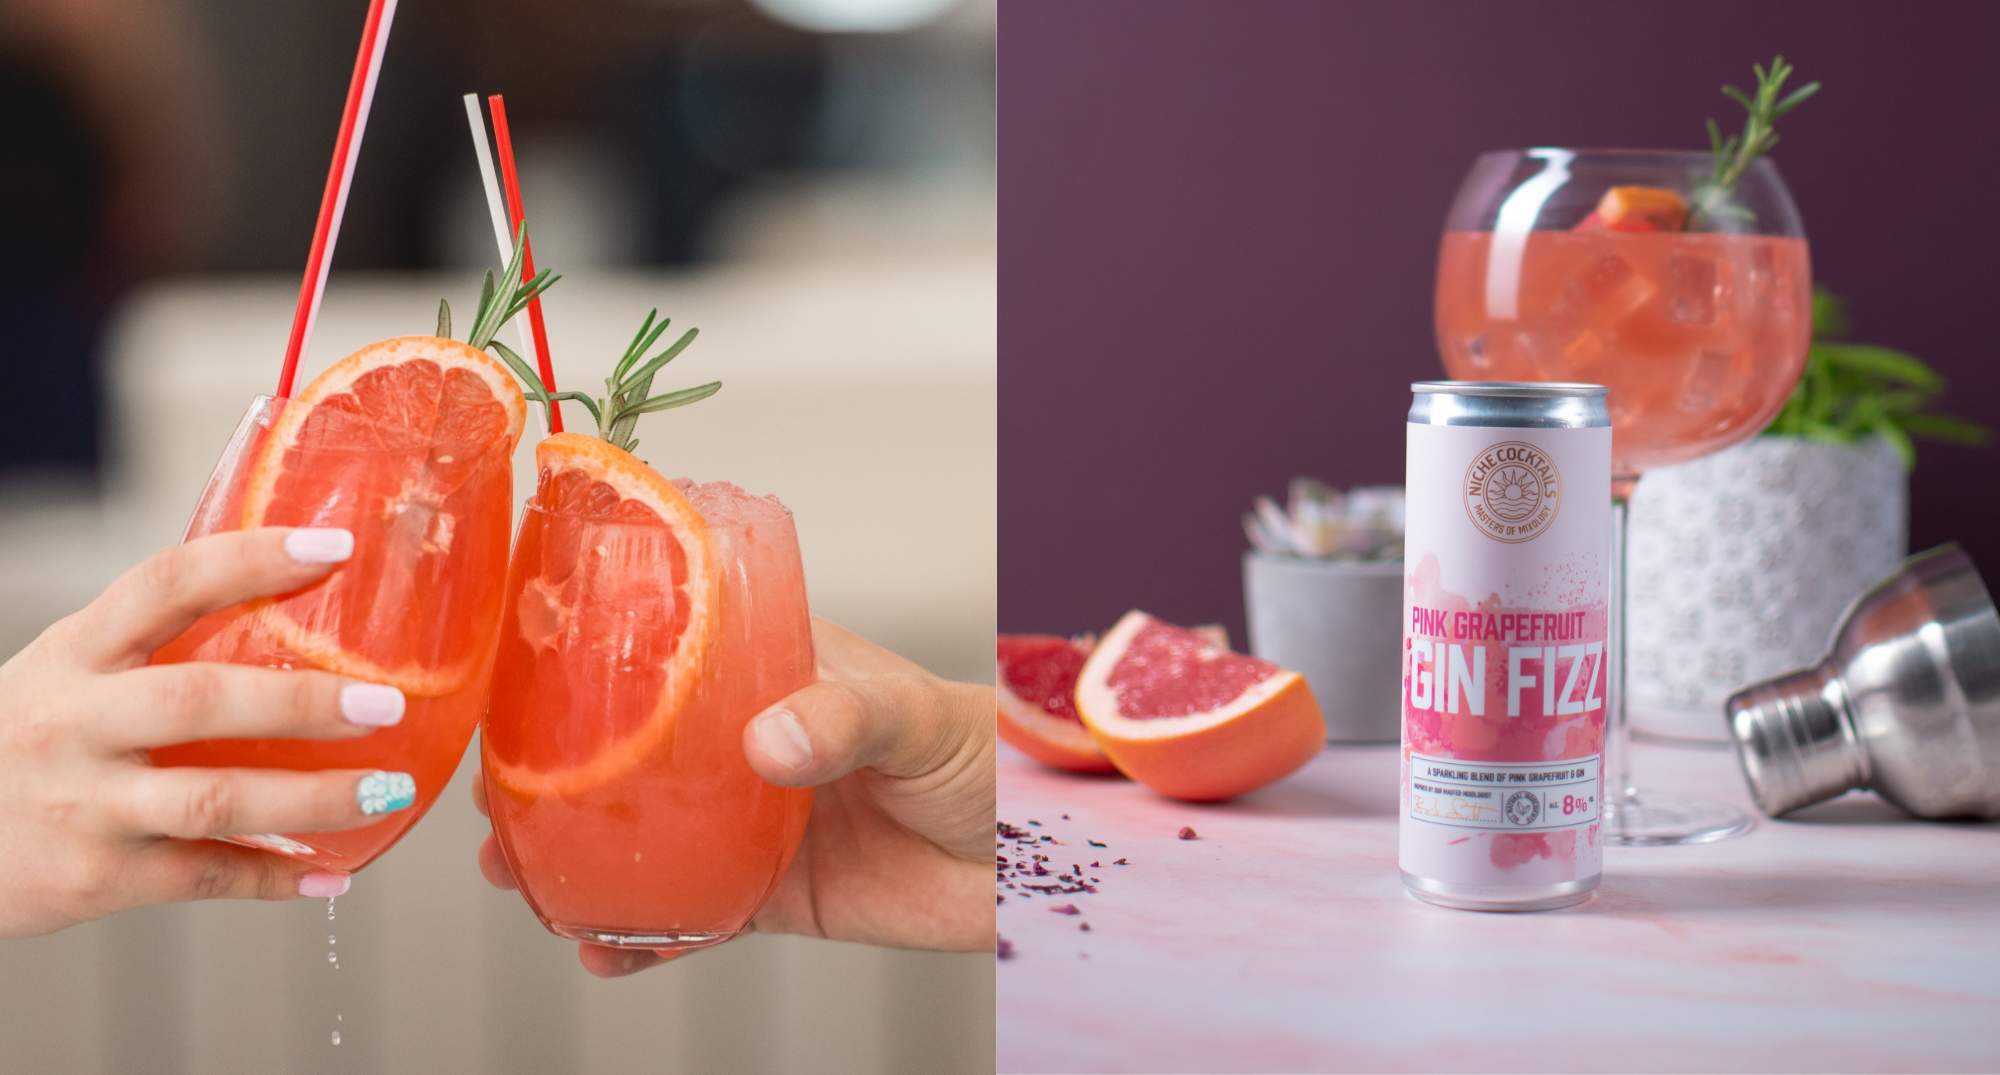 pink grapefruit gin fizz - perfect summer recipe